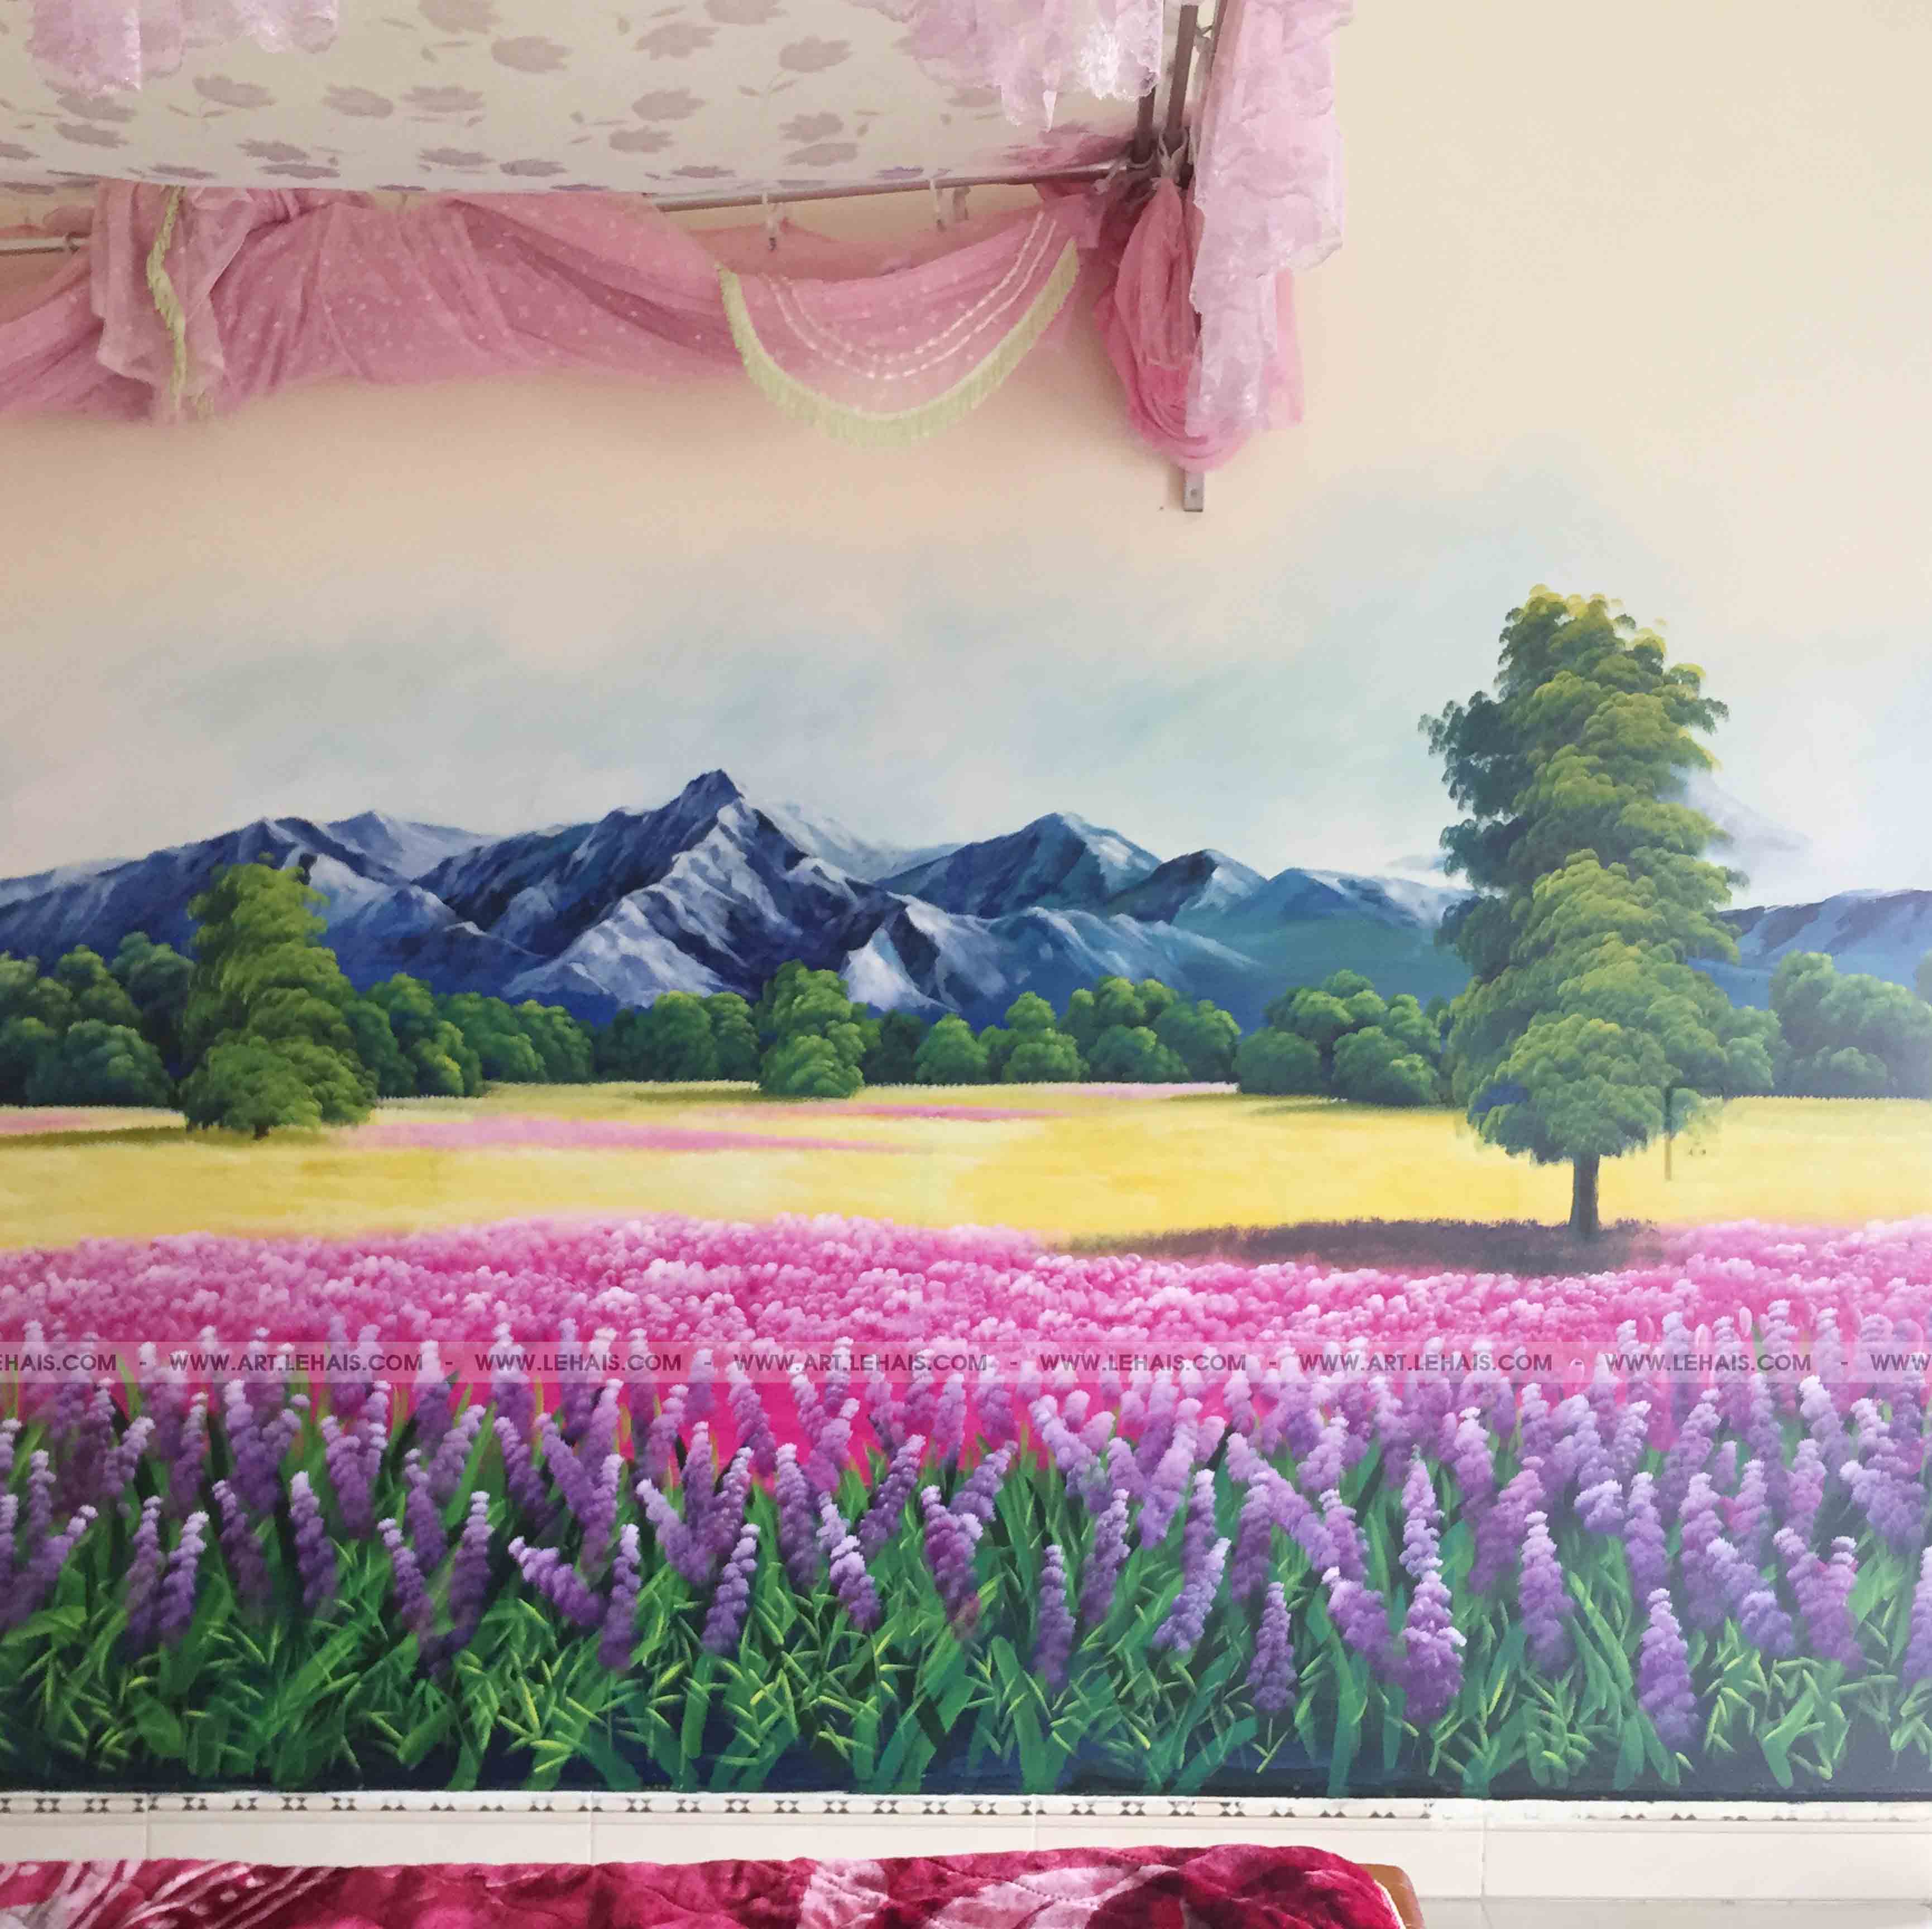 Vẽ cảnh cánh đồng hoa tại Thủy Nguyên, Hải Phòng - TT105LHAR